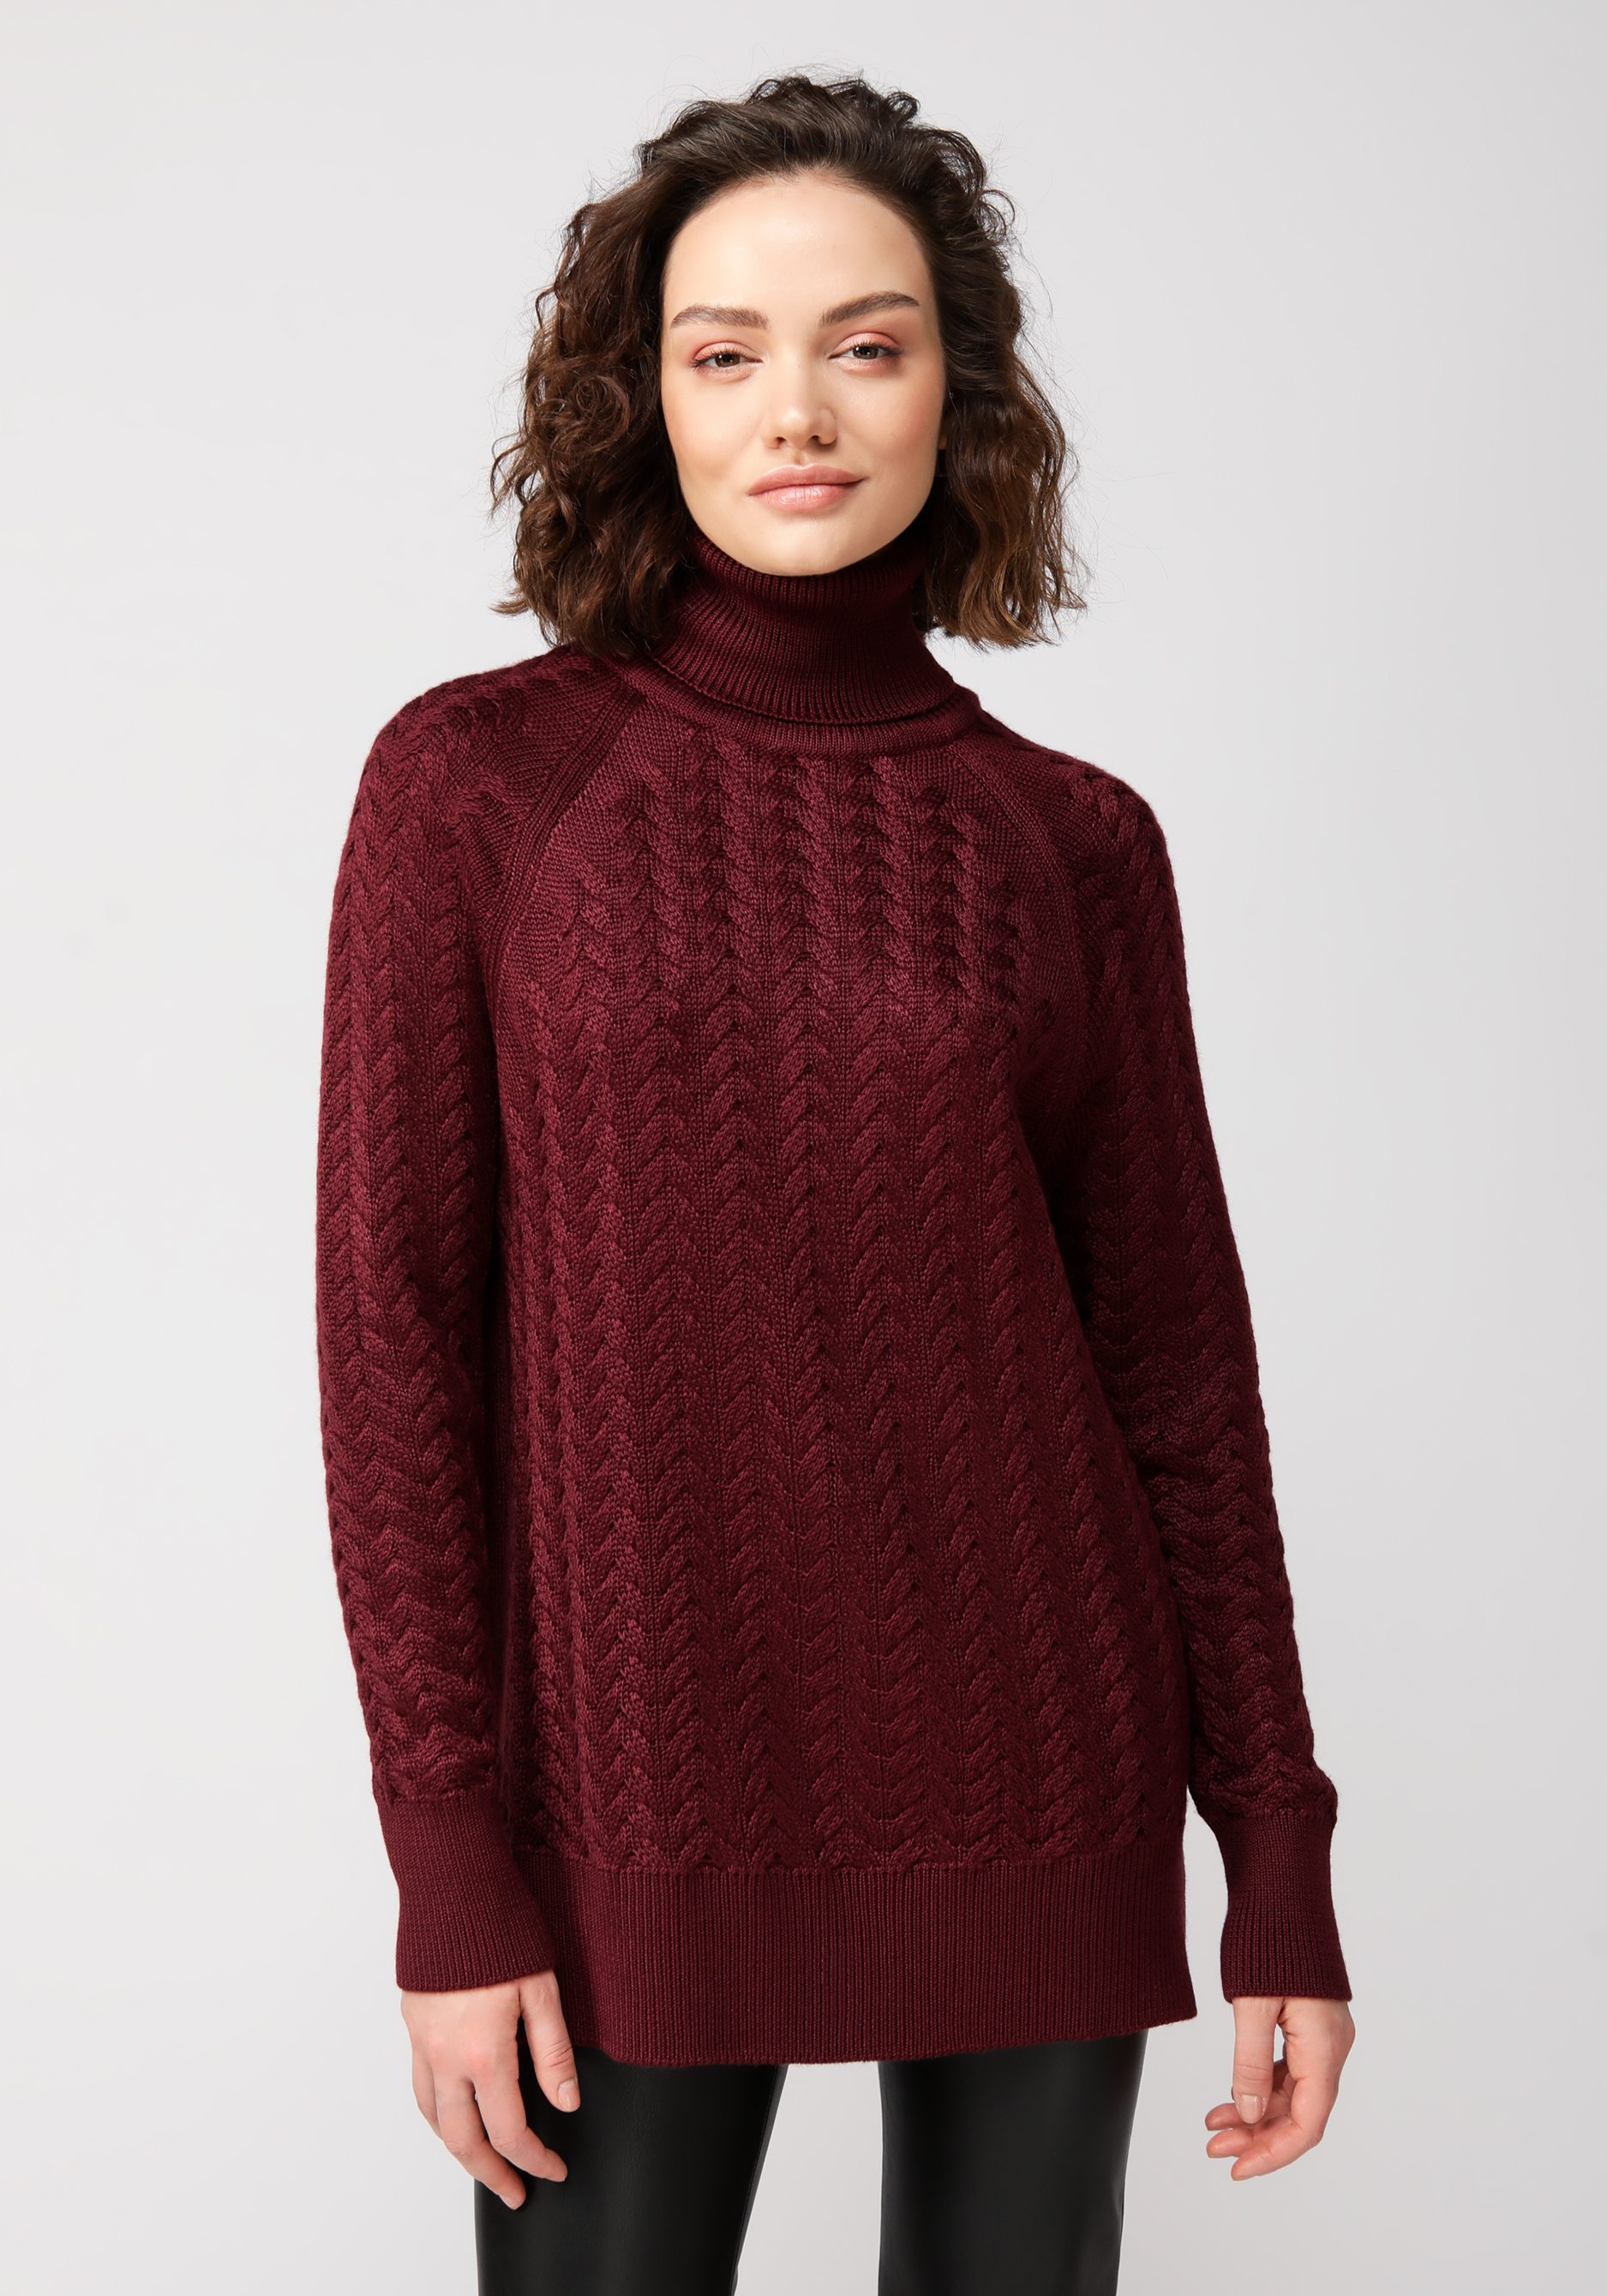 свитер с высоким горлом грейс Свитер вязаный с косами и высоким горлом